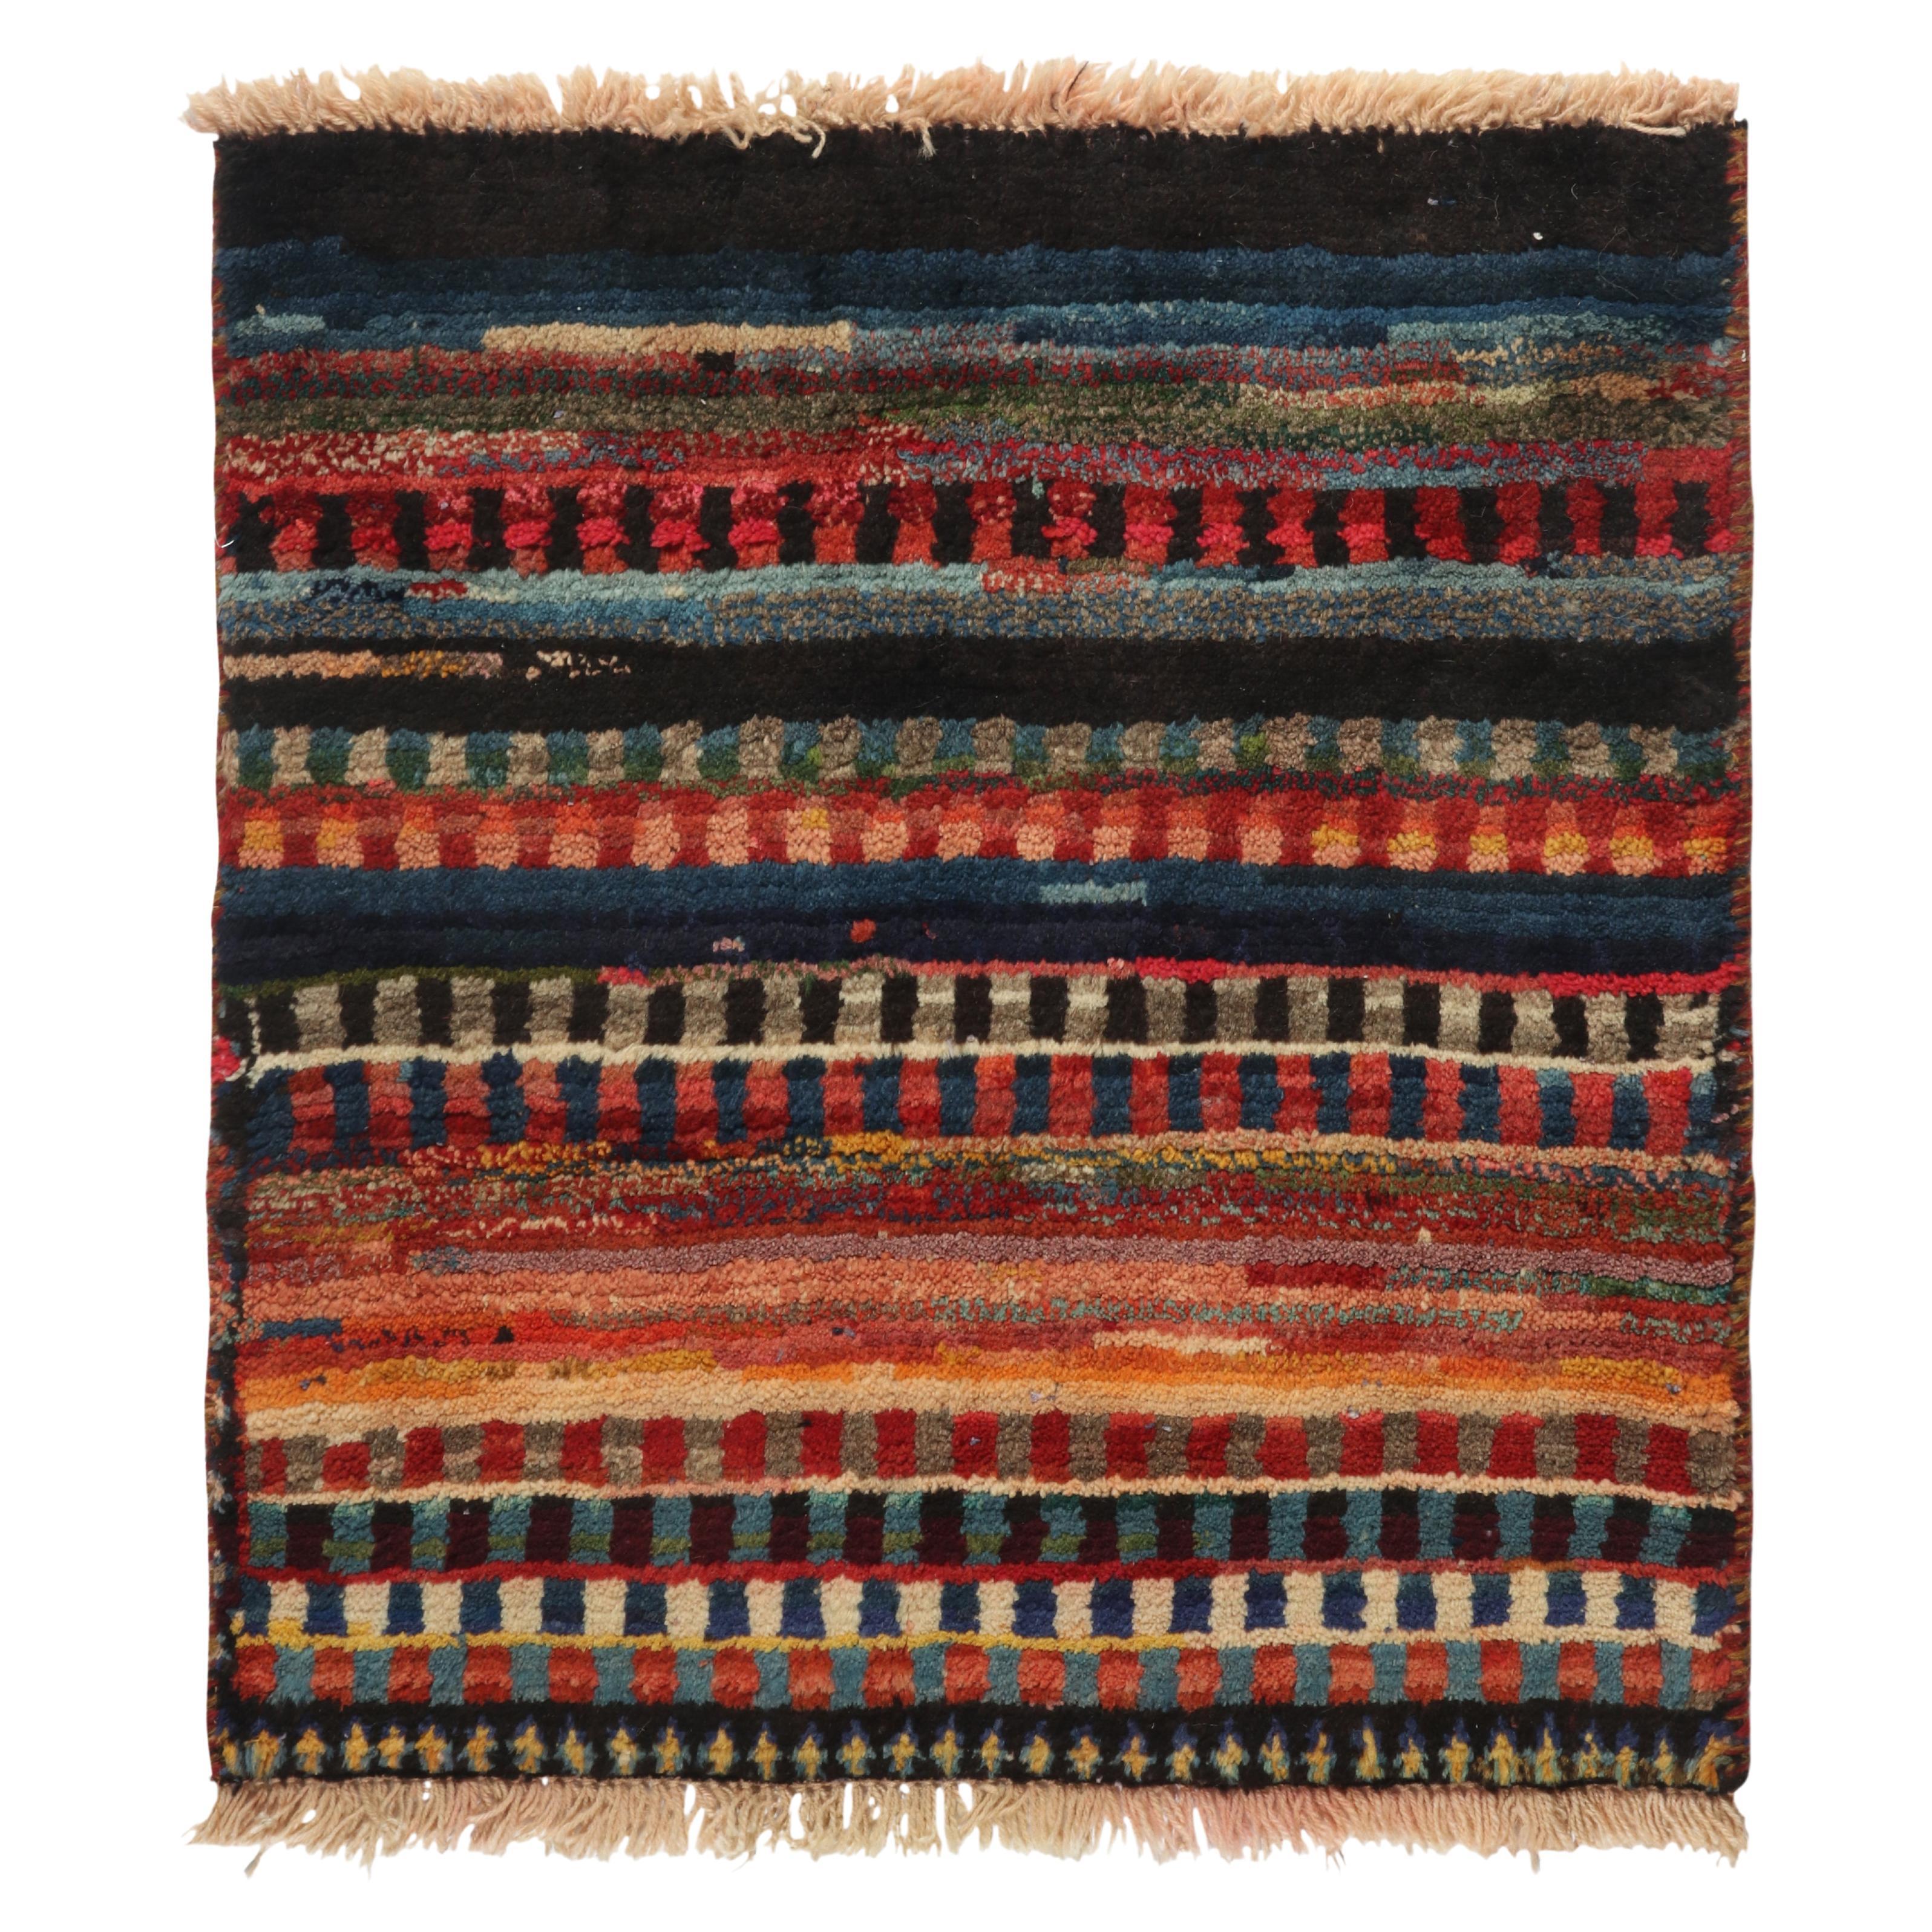 Gabbeh Tribal-Teppich im Vintage-Stil mit mehrfarbig gestreiften Mustern von Teppich & Kelim